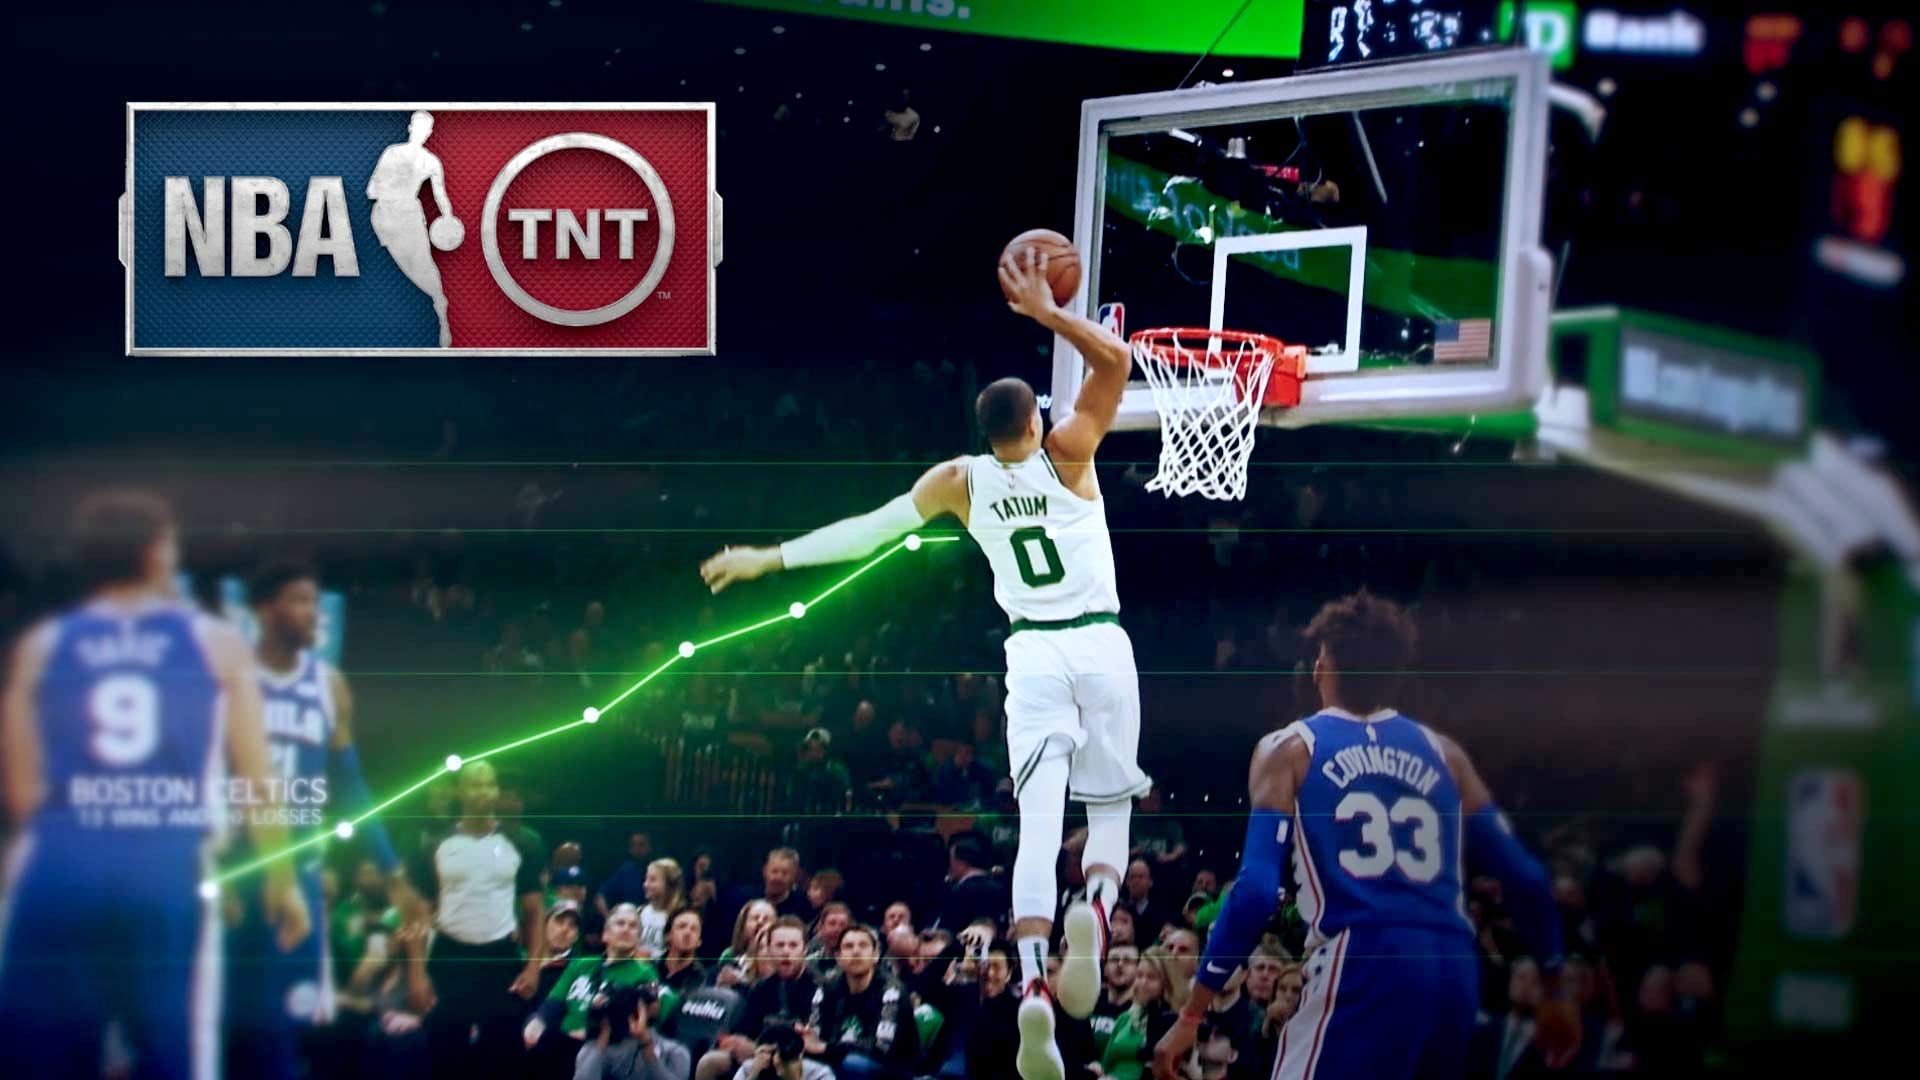 NBA on TNT tease